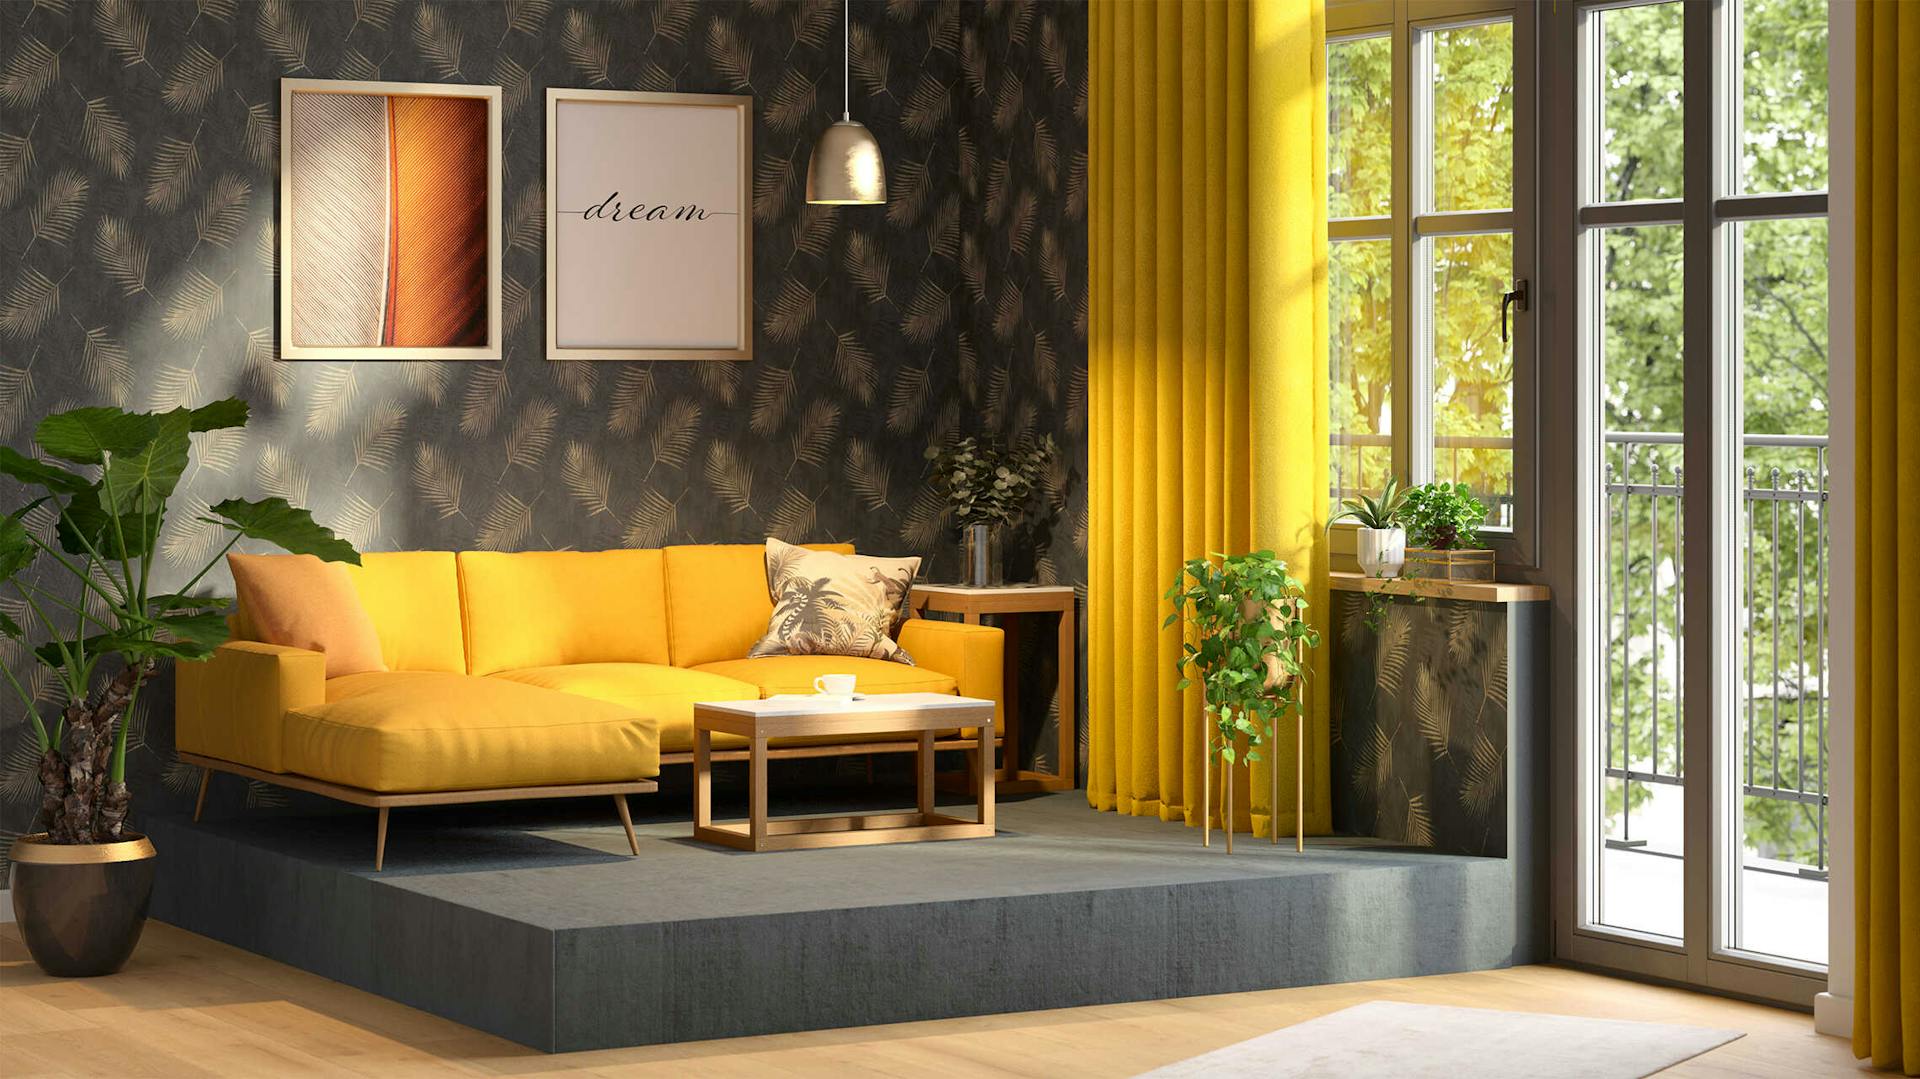 Ein gelbes Sofa, welches auf einem grauen Podest platziert ist und vor einer dunklen Tapete  mit Blattmotiv  steht.